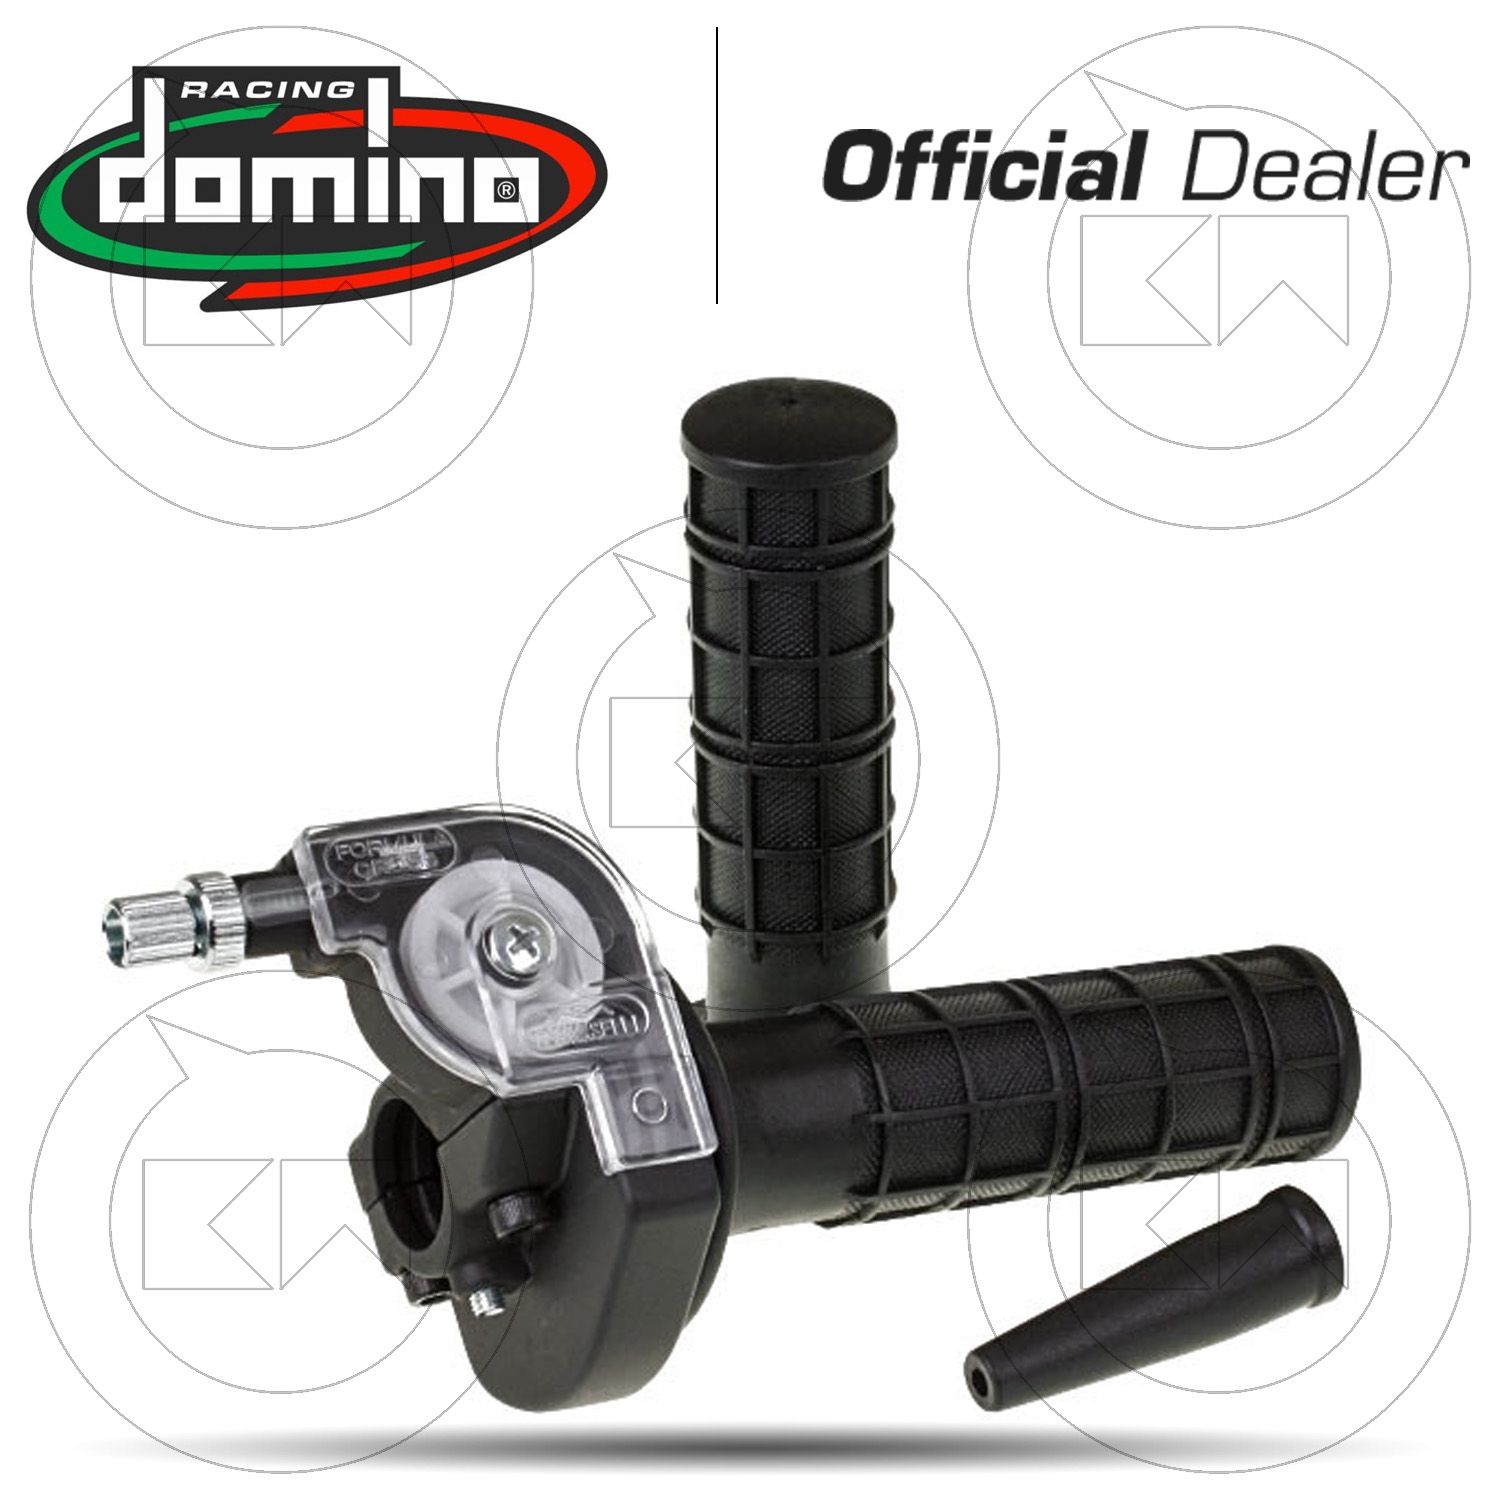 Domino COPPIA MANOPOLE MODELLO XM2 SUPER SOFT IN GOMMA PER MOTO STRADALI/RACING COLORE NERO/GIALLO Lunghezza 120 mm e 125 mm Accessori 97.5595.04-00 